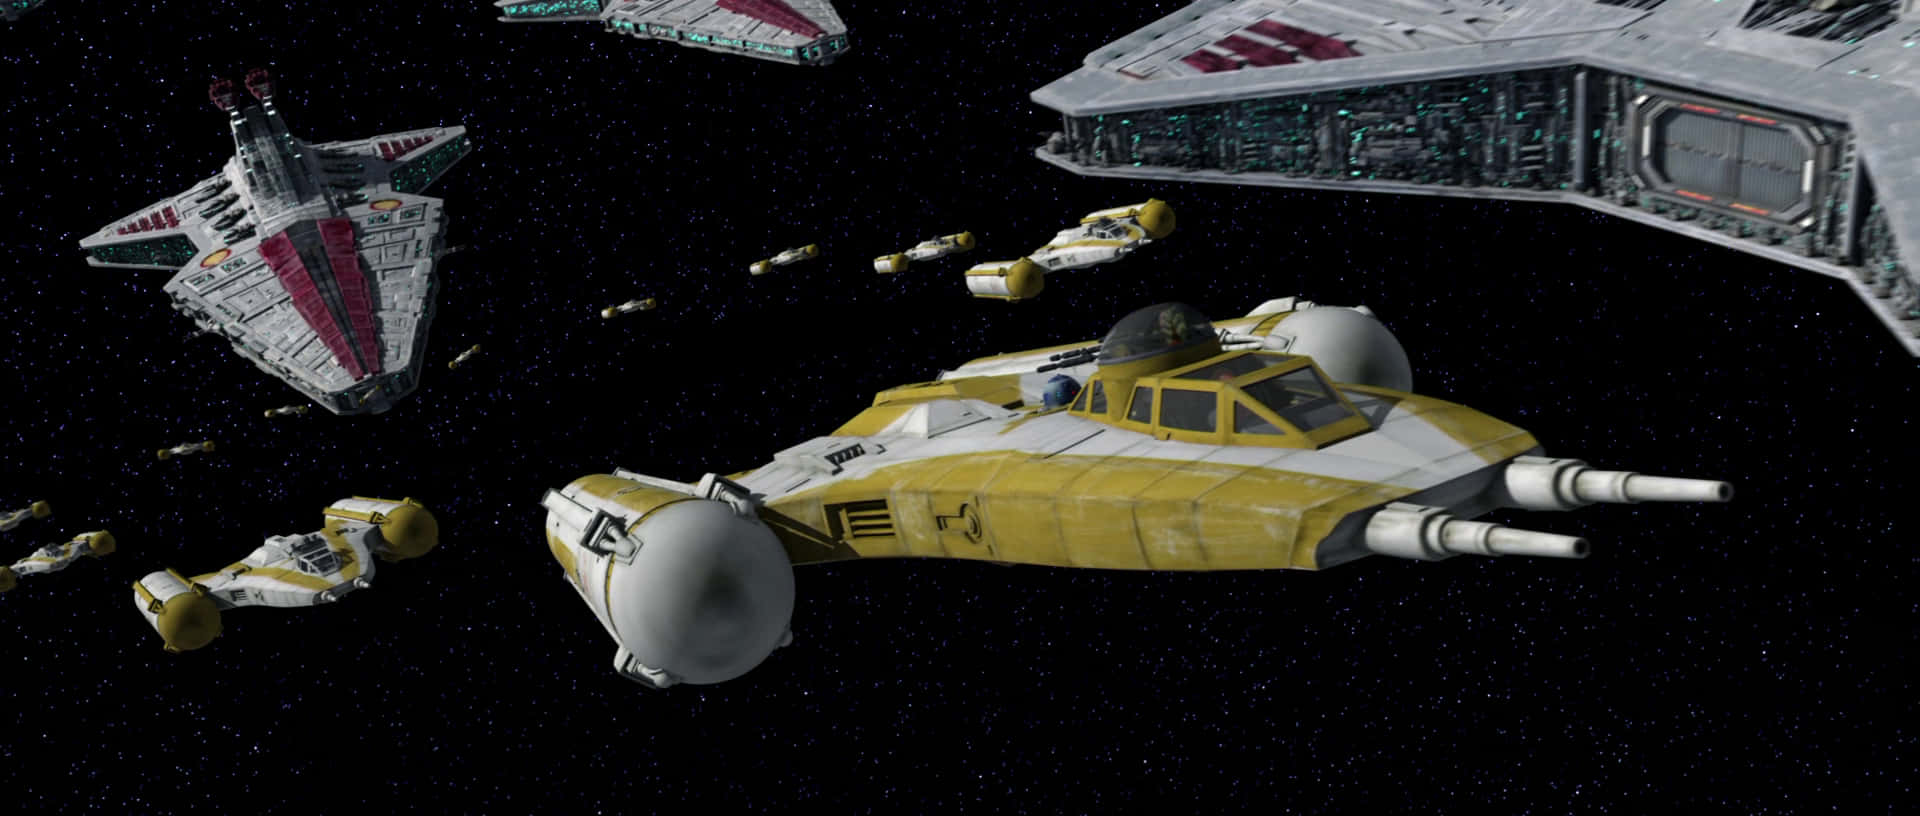 Exploralo Desconocido, Más Allá De Los Confines De La Galaxia En El Mundo Envolvente De Star Wars Space.